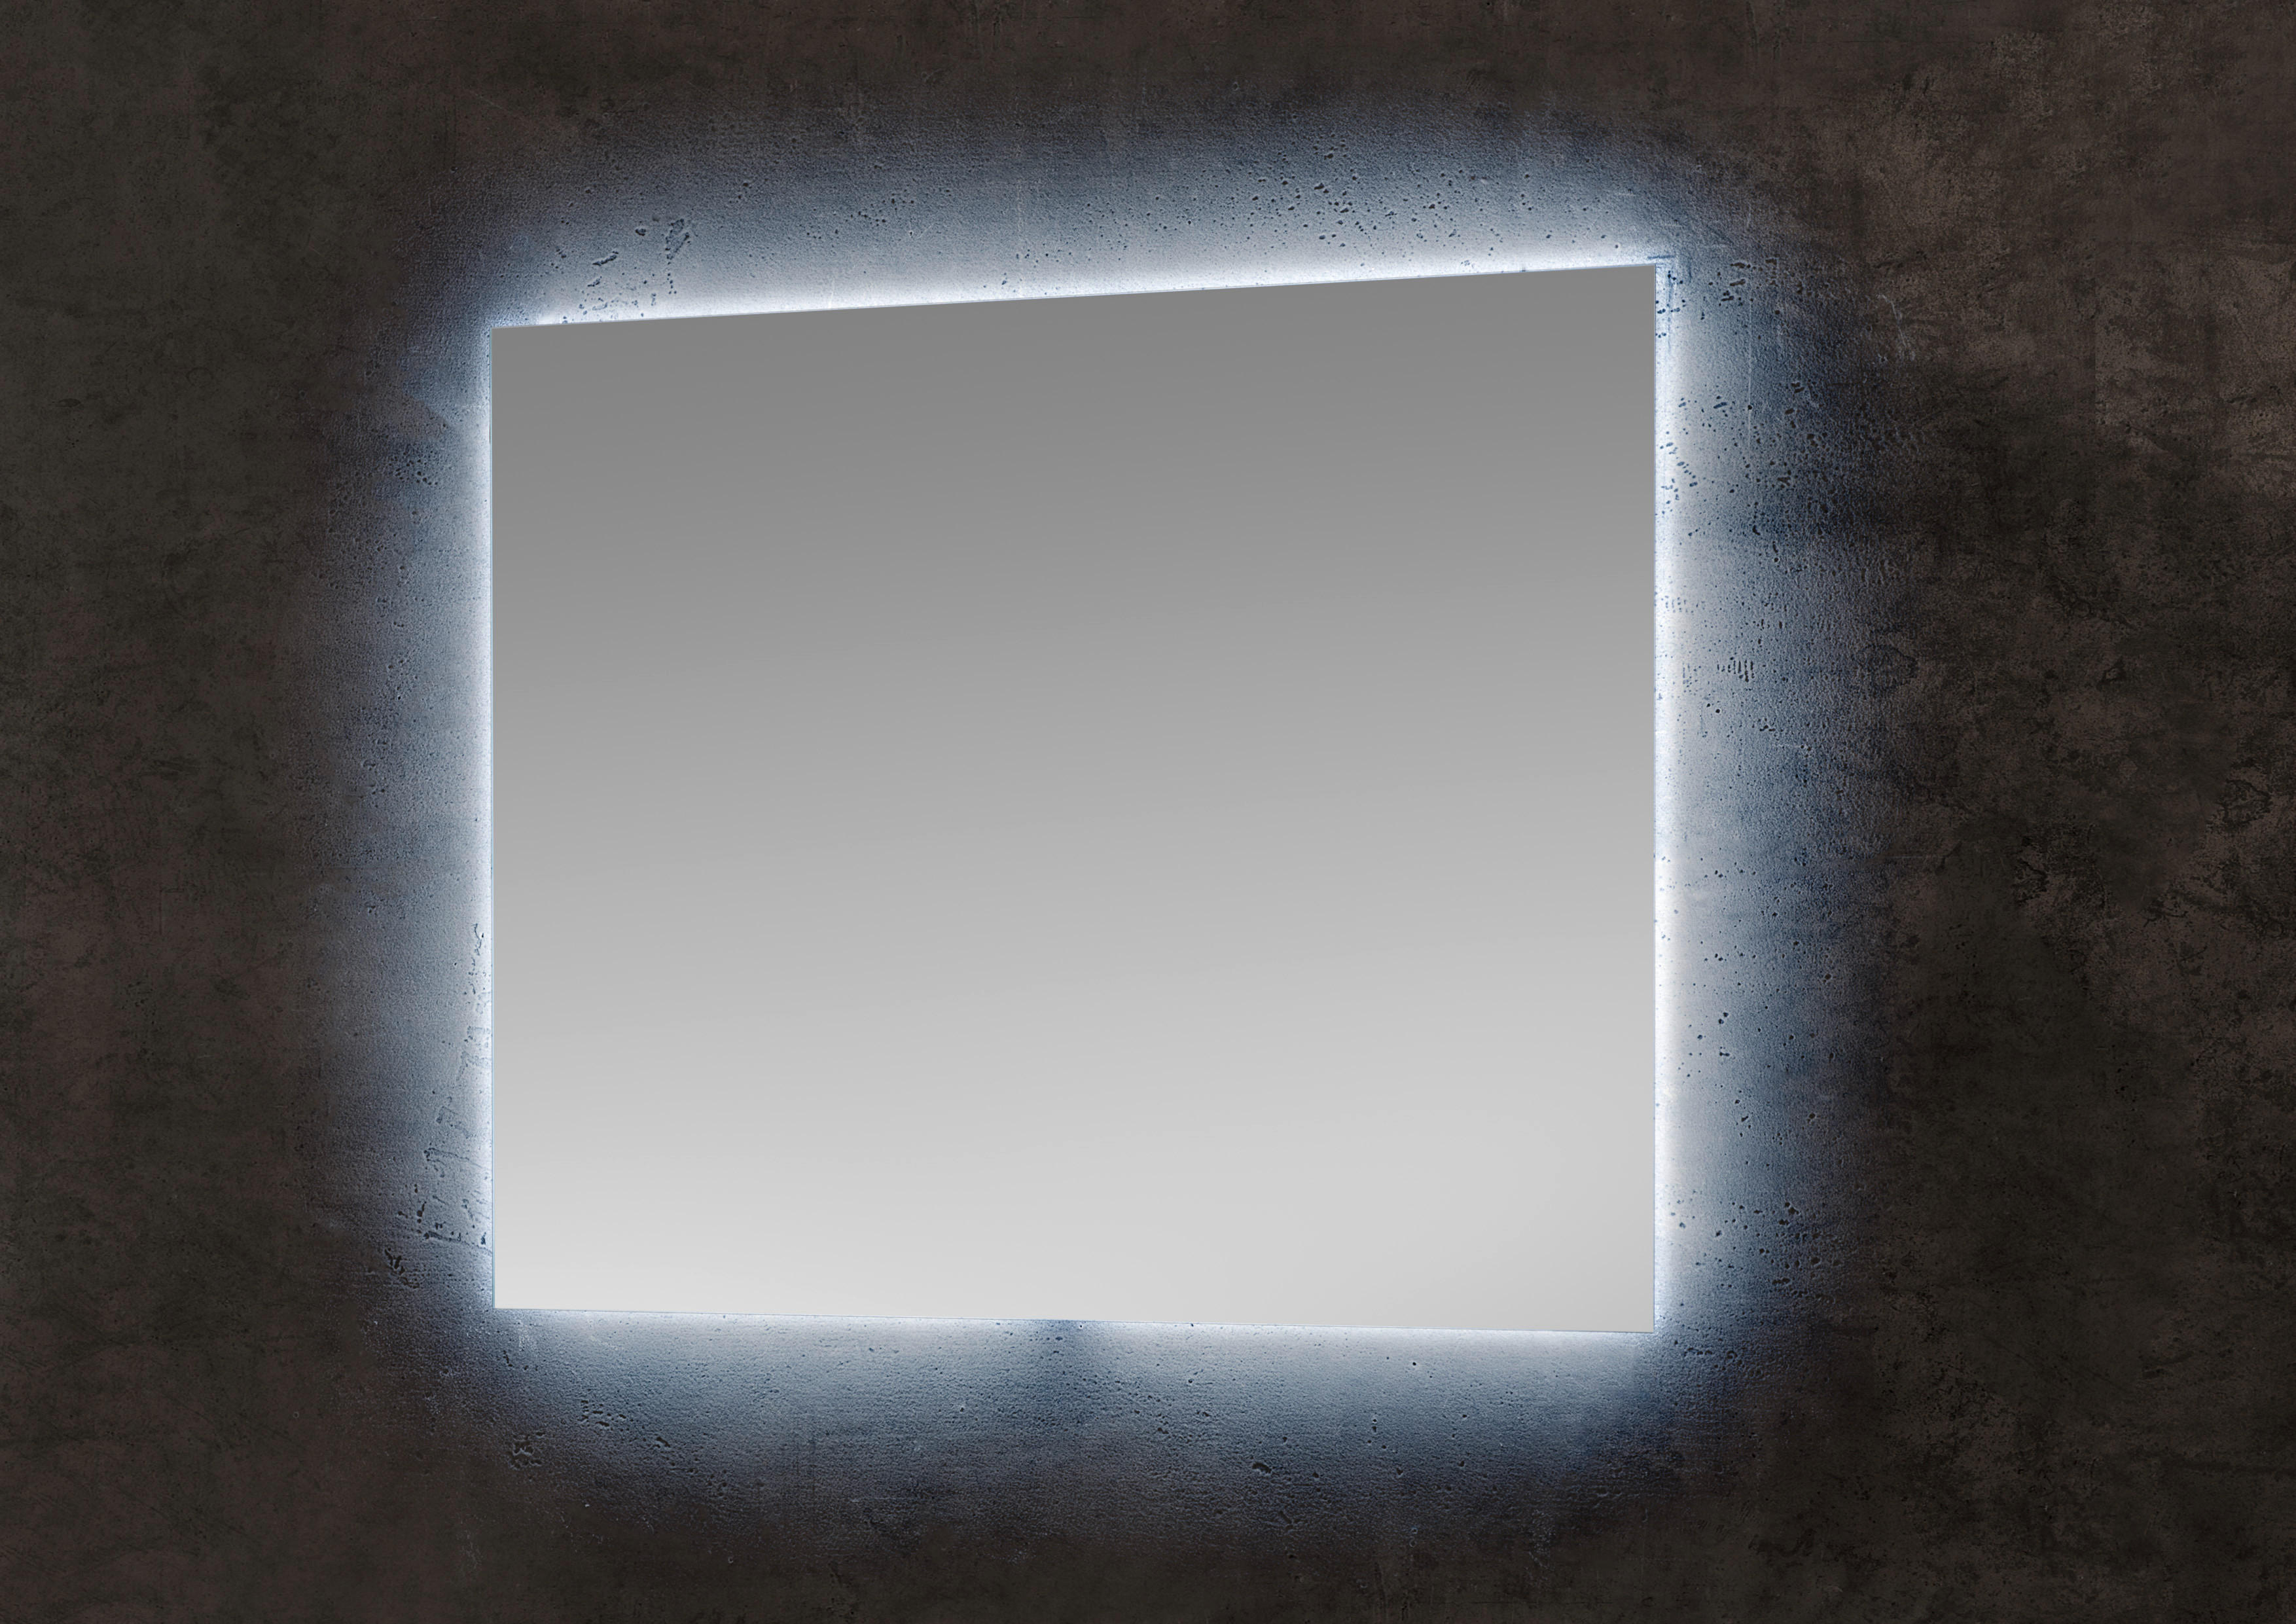 Lichtspiegel SP 1 kaltweiß B/H/T: ca. 80x65x3 cm SP 1 - kaltweiß (80,00/65,00/3,00cm)